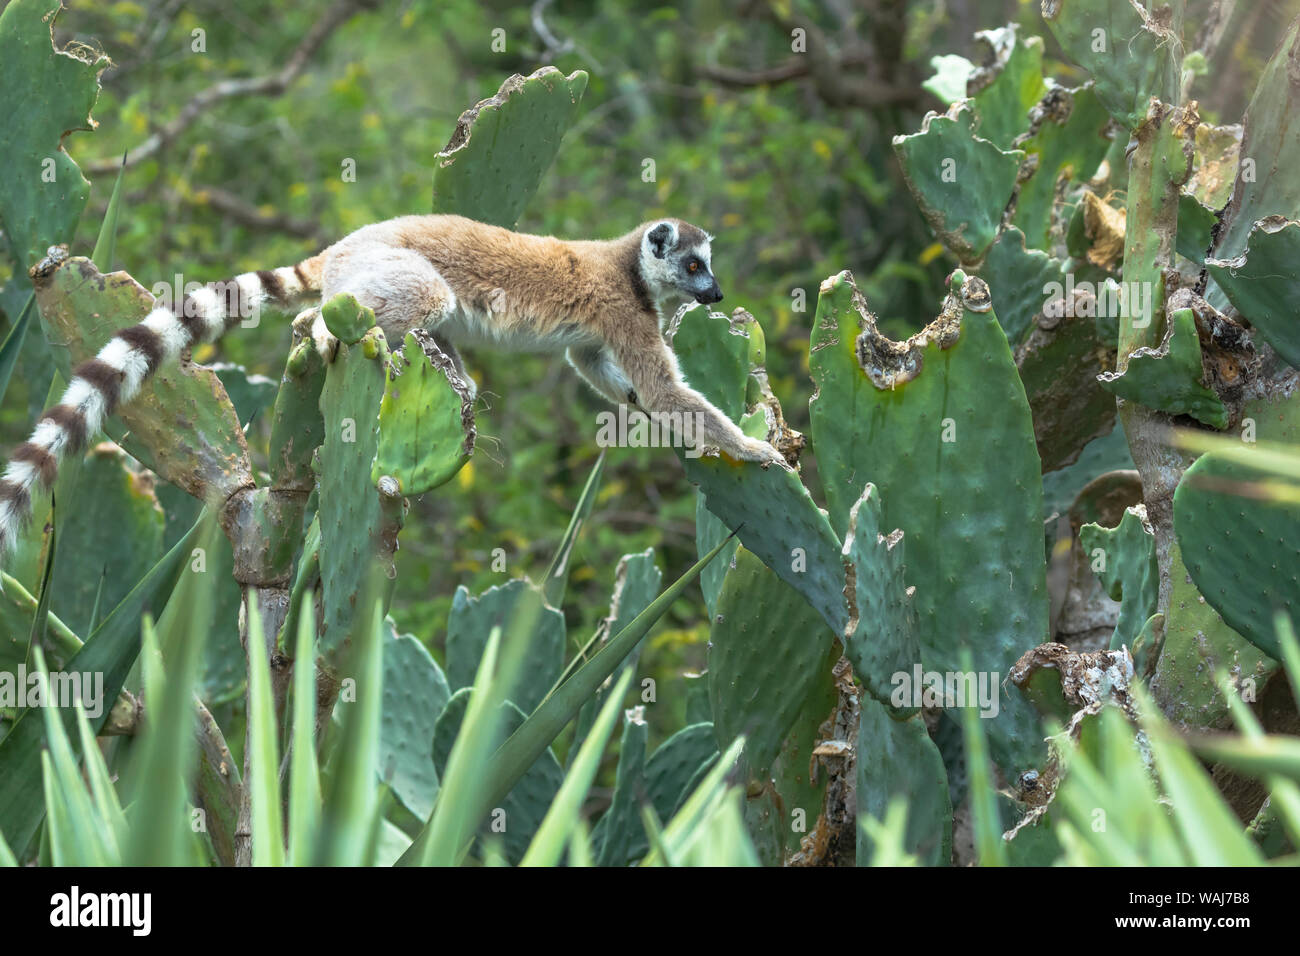 Africa e Madagascar, Amboasary, Berenty riserva. Un anello-tailed lemur (Lemur catta) arrampicandosi tra un fico d'india cactus per uno snack. Foto Stock